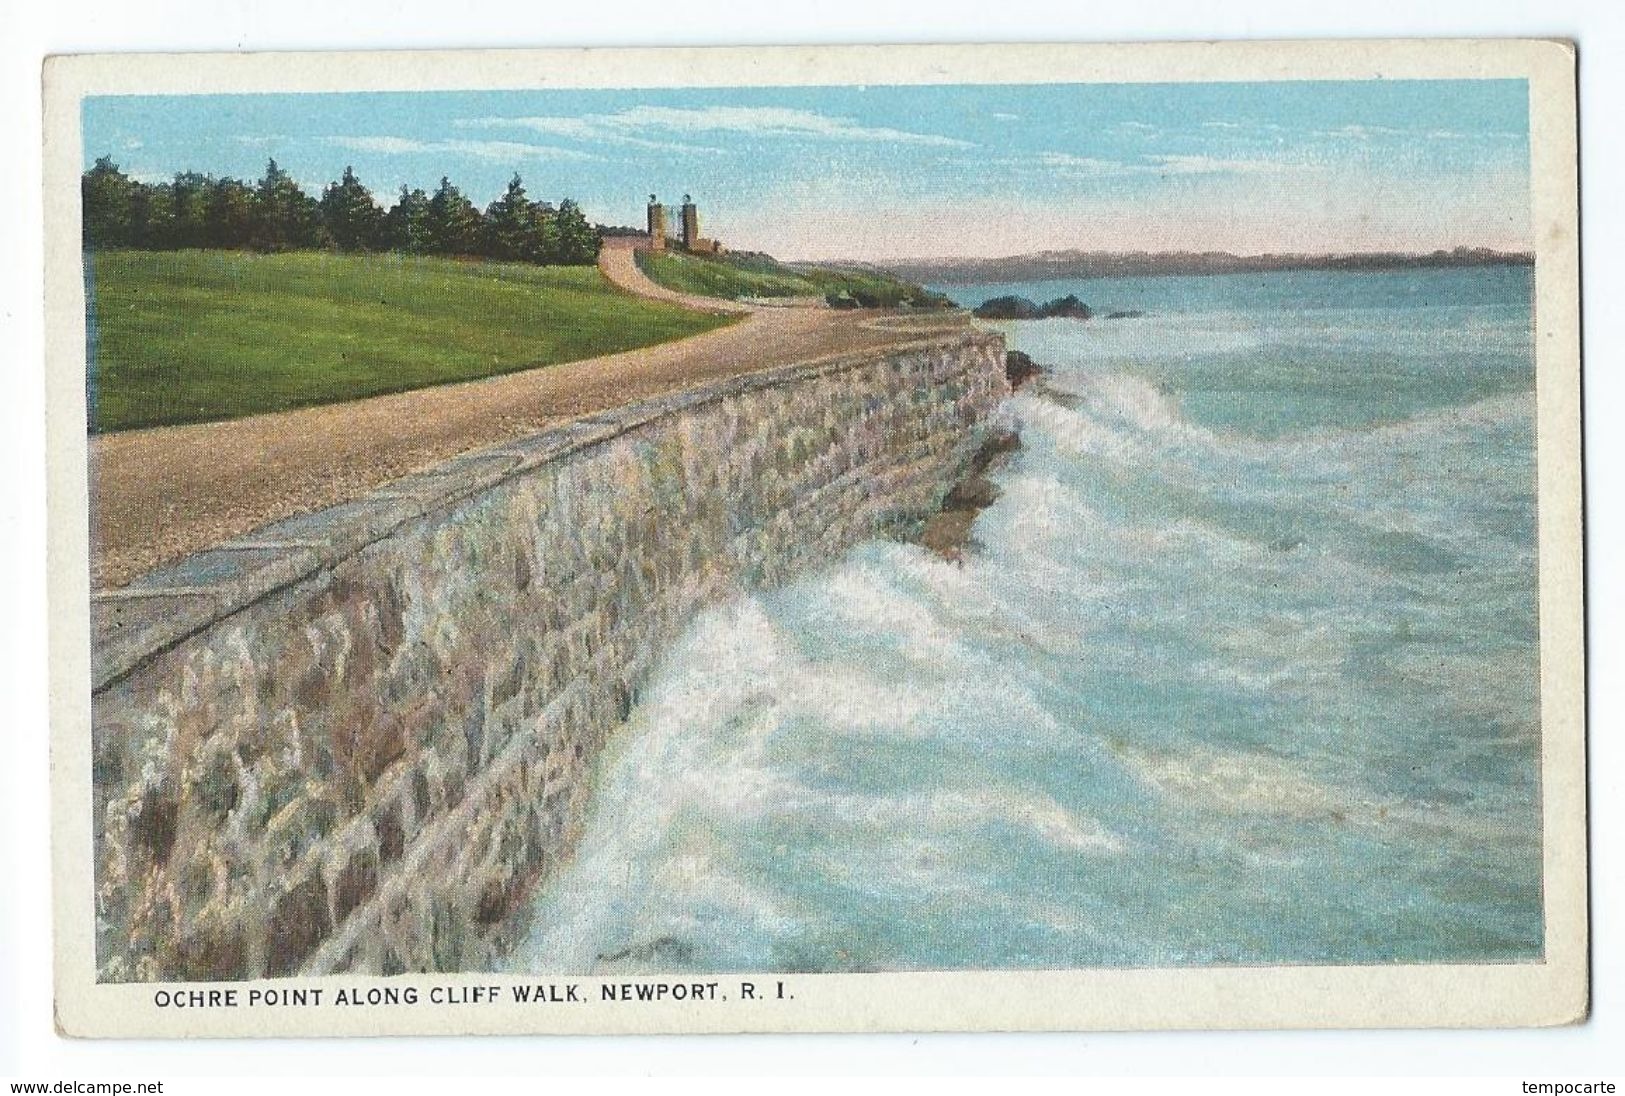 Newport - Ochre Point Along Cliff Walk - Newport